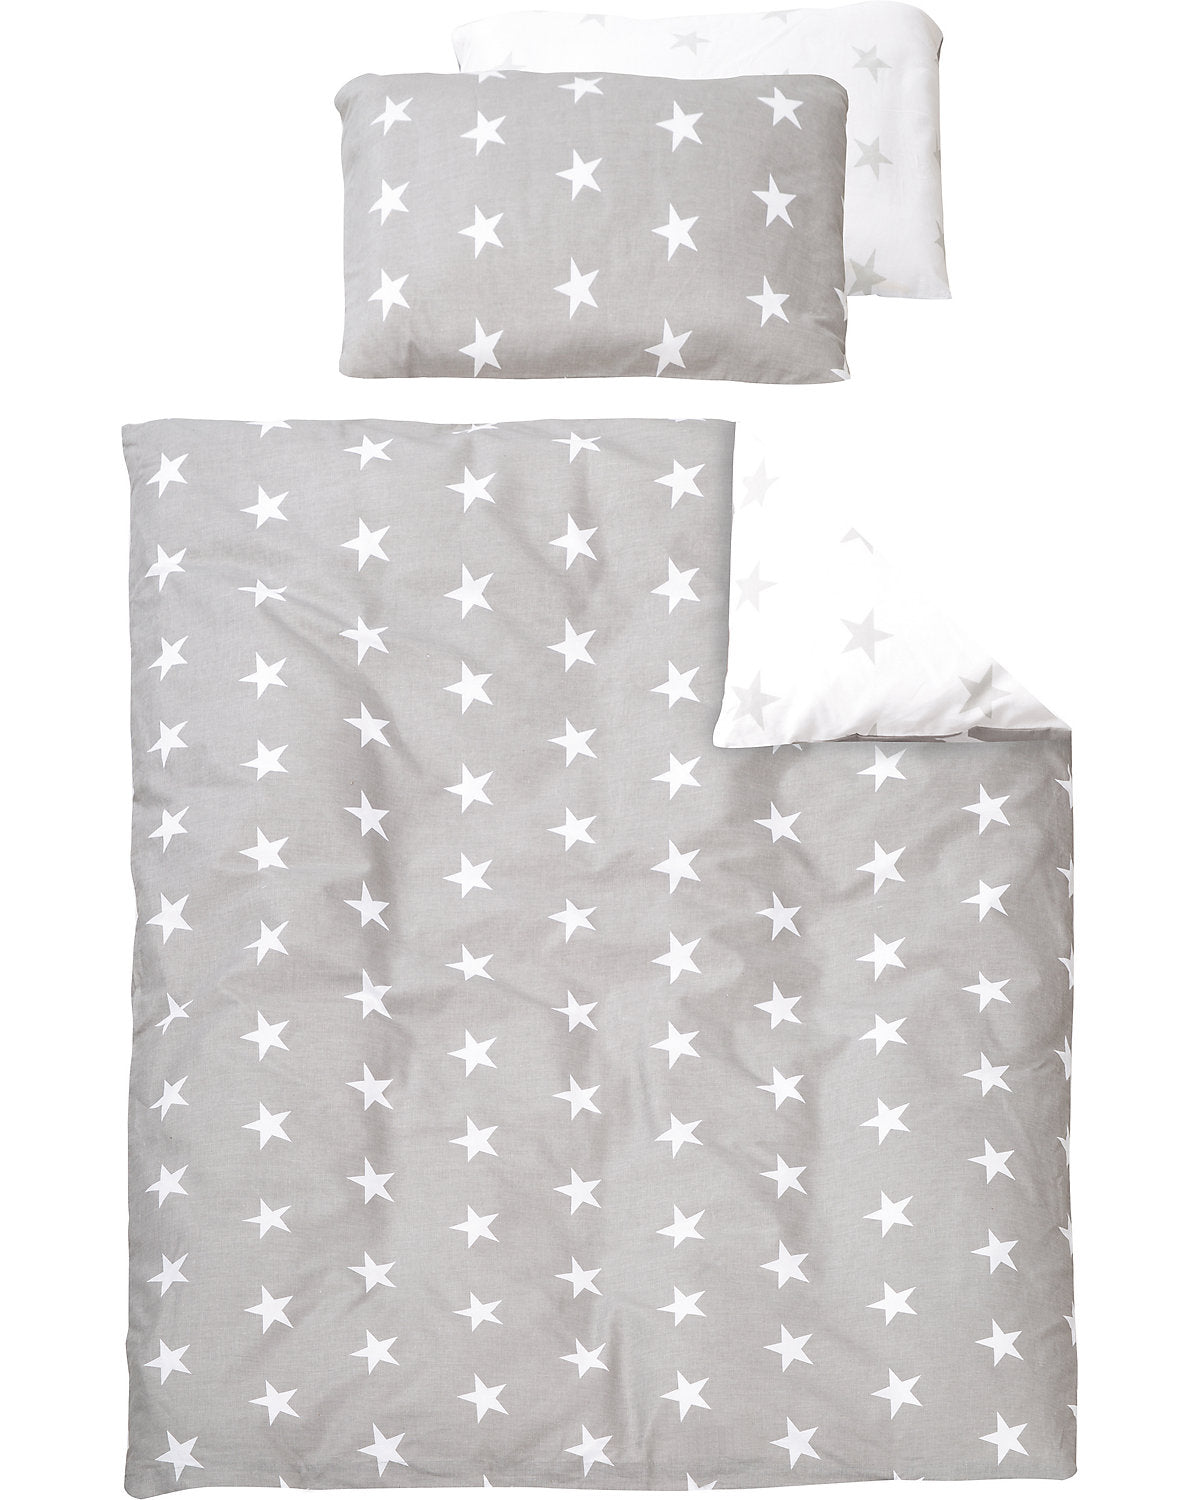 Roba Kinderbett Komplett-Set Sterne grau 5-teilig